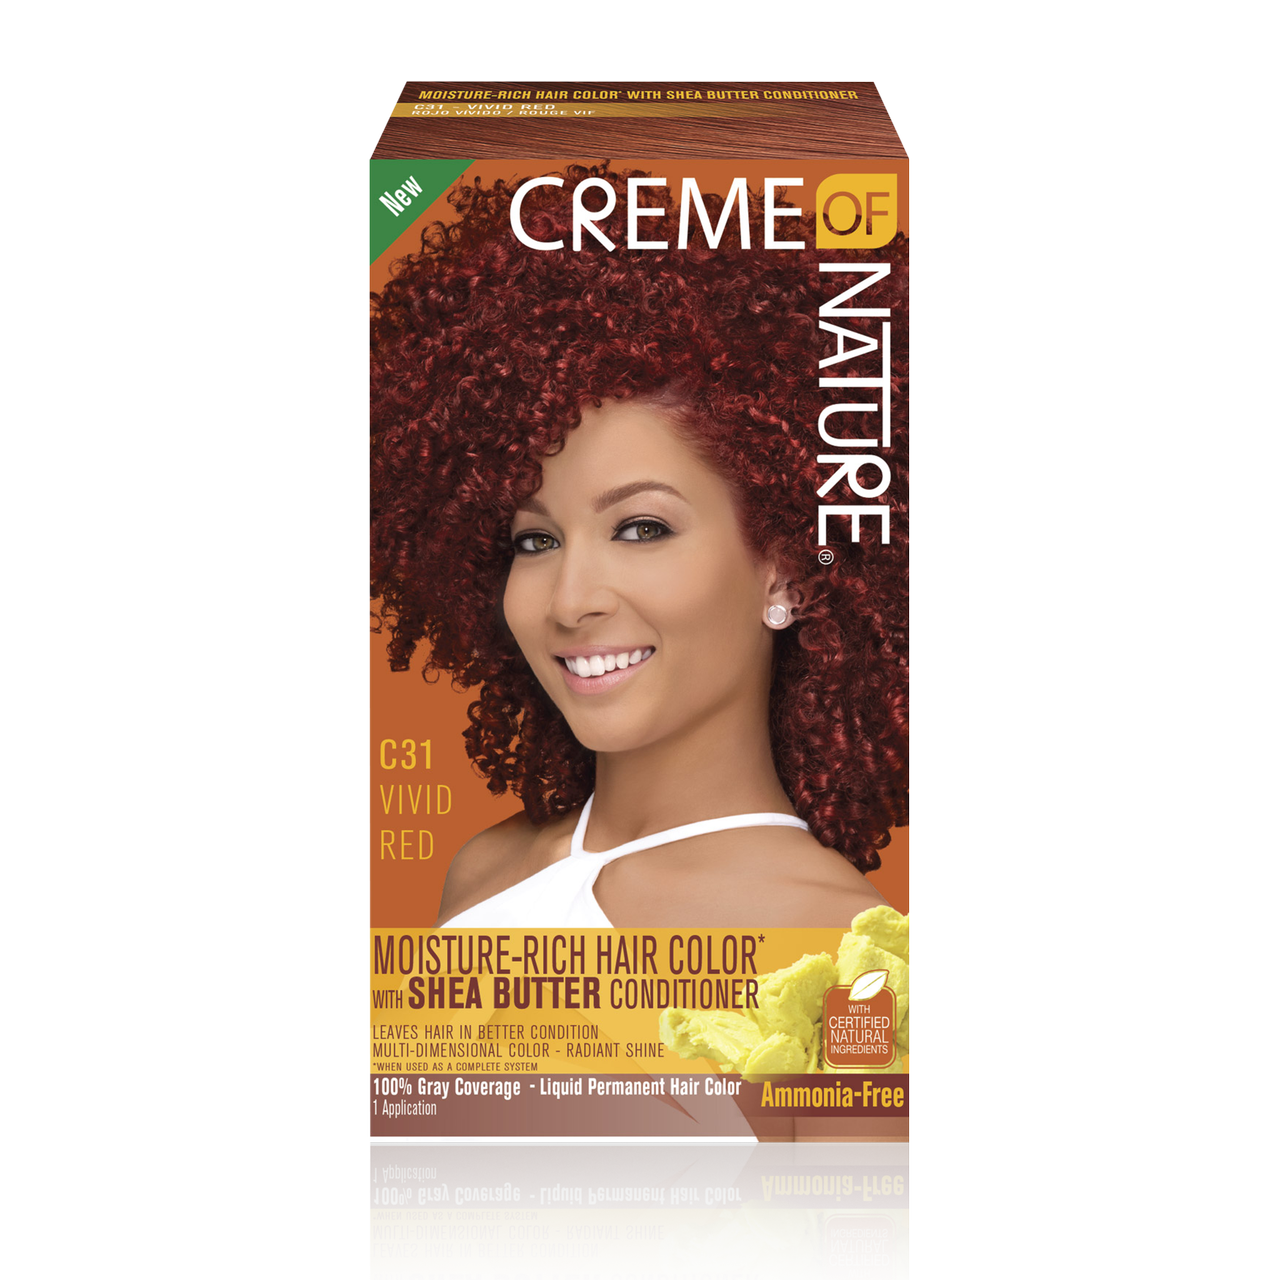 Indflydelse lave et eksperiment forstyrrelse Certified Natural Ingredients Moisture-Rich Hair Color* with Shea Butter  Conditioner C31 Vivid Red